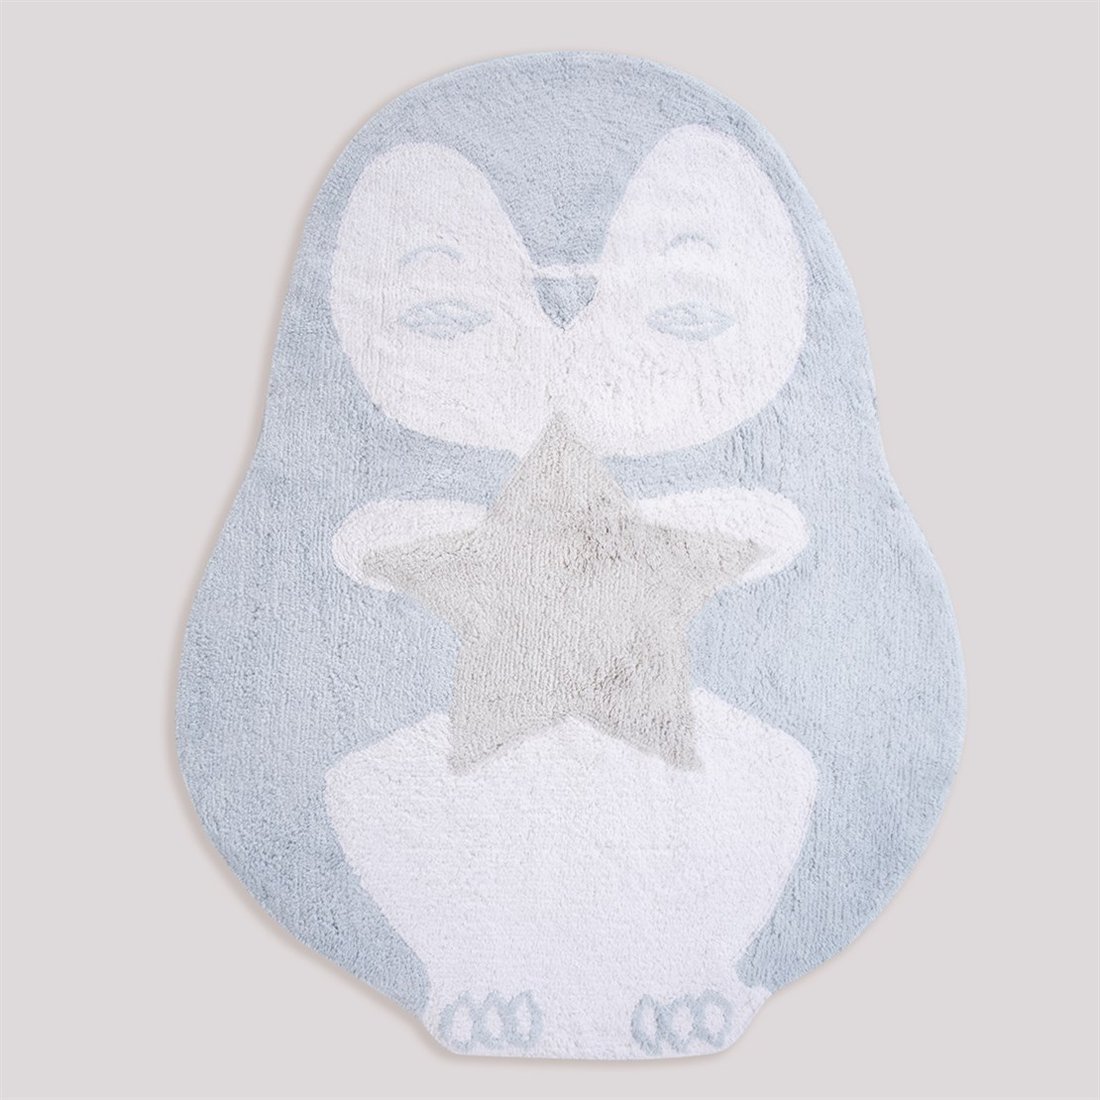 Килим у формі пінгвіна 140*140 в дитячу кімнату North Star блакитний